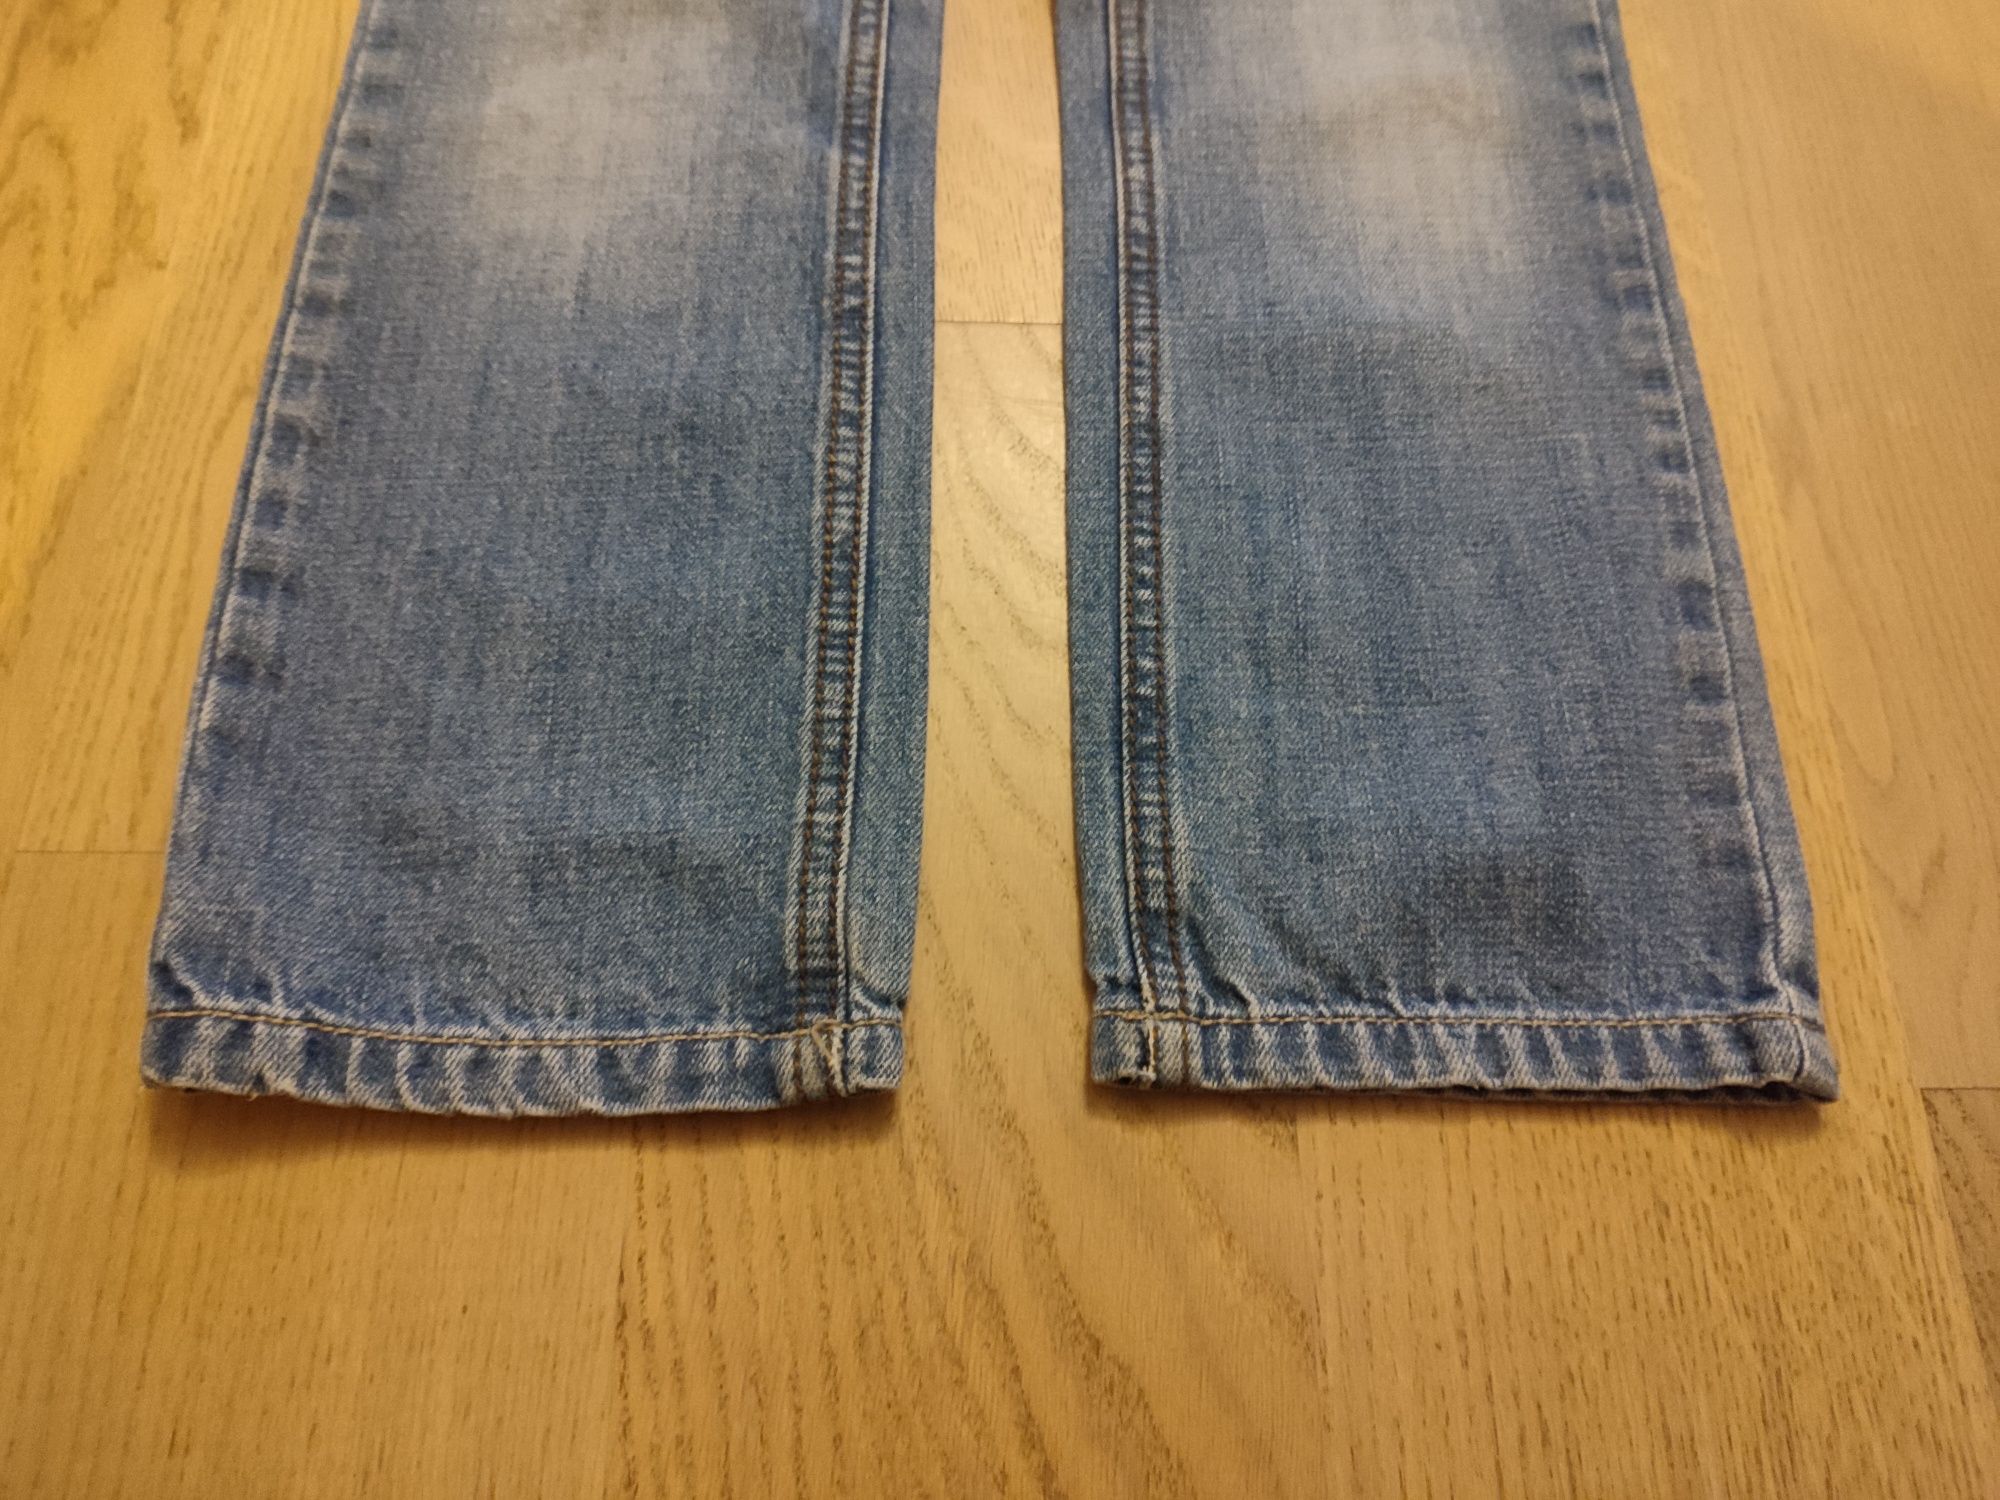 r134 Przecierane jeansy spodnie ESPRIT r134